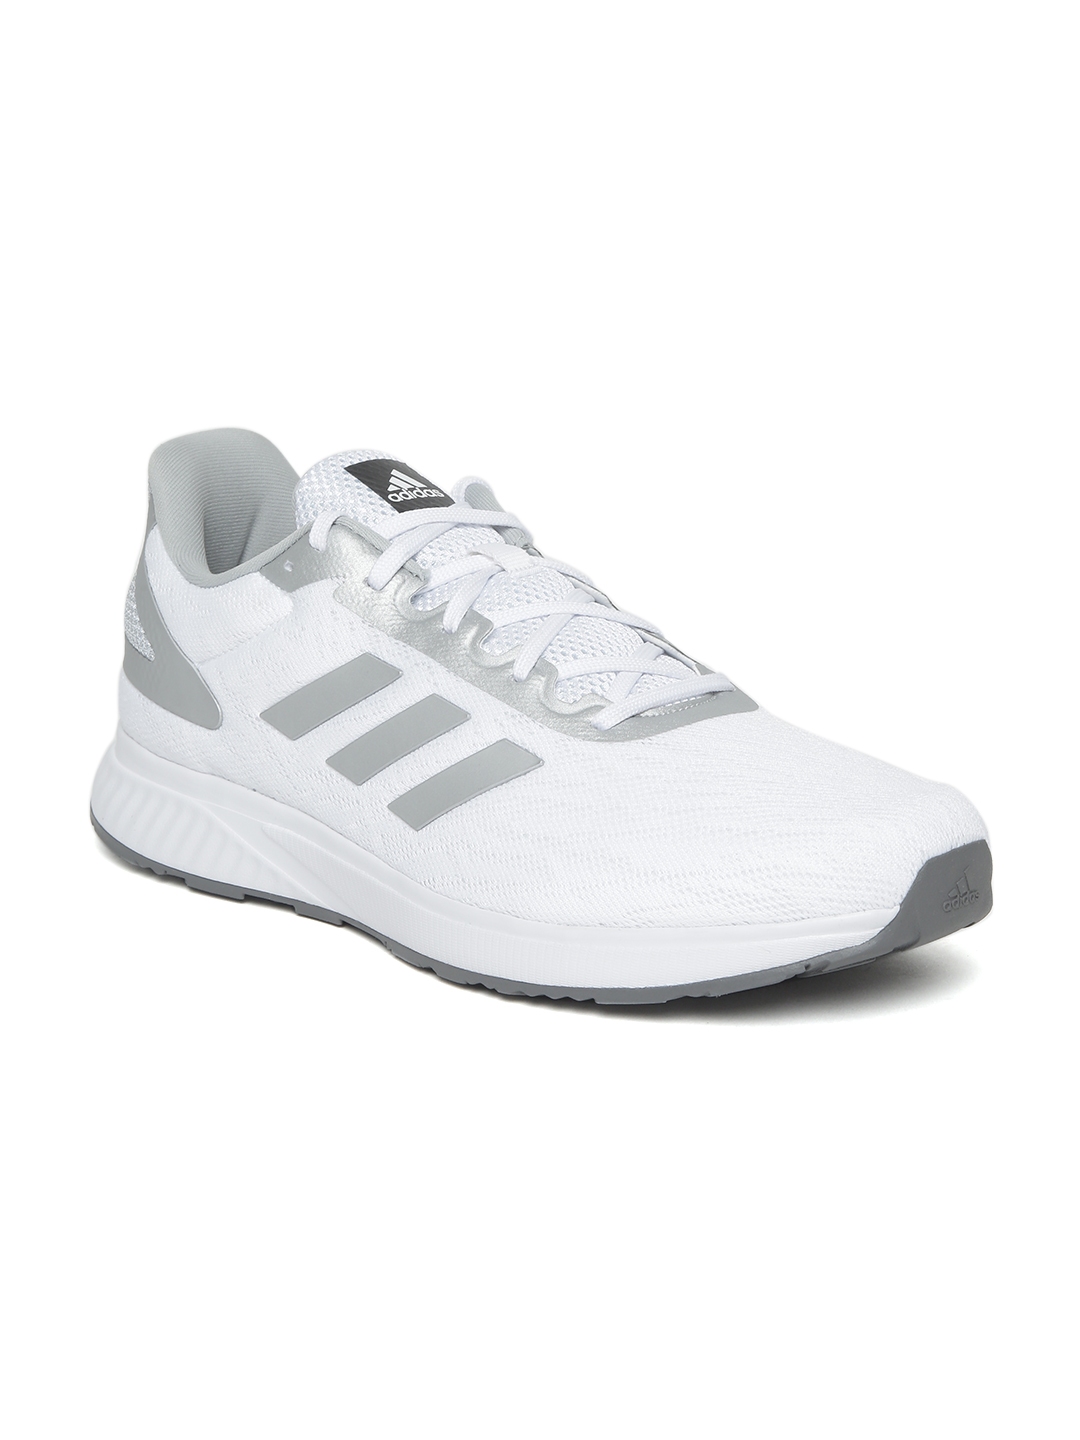 adidas kalus running shoes